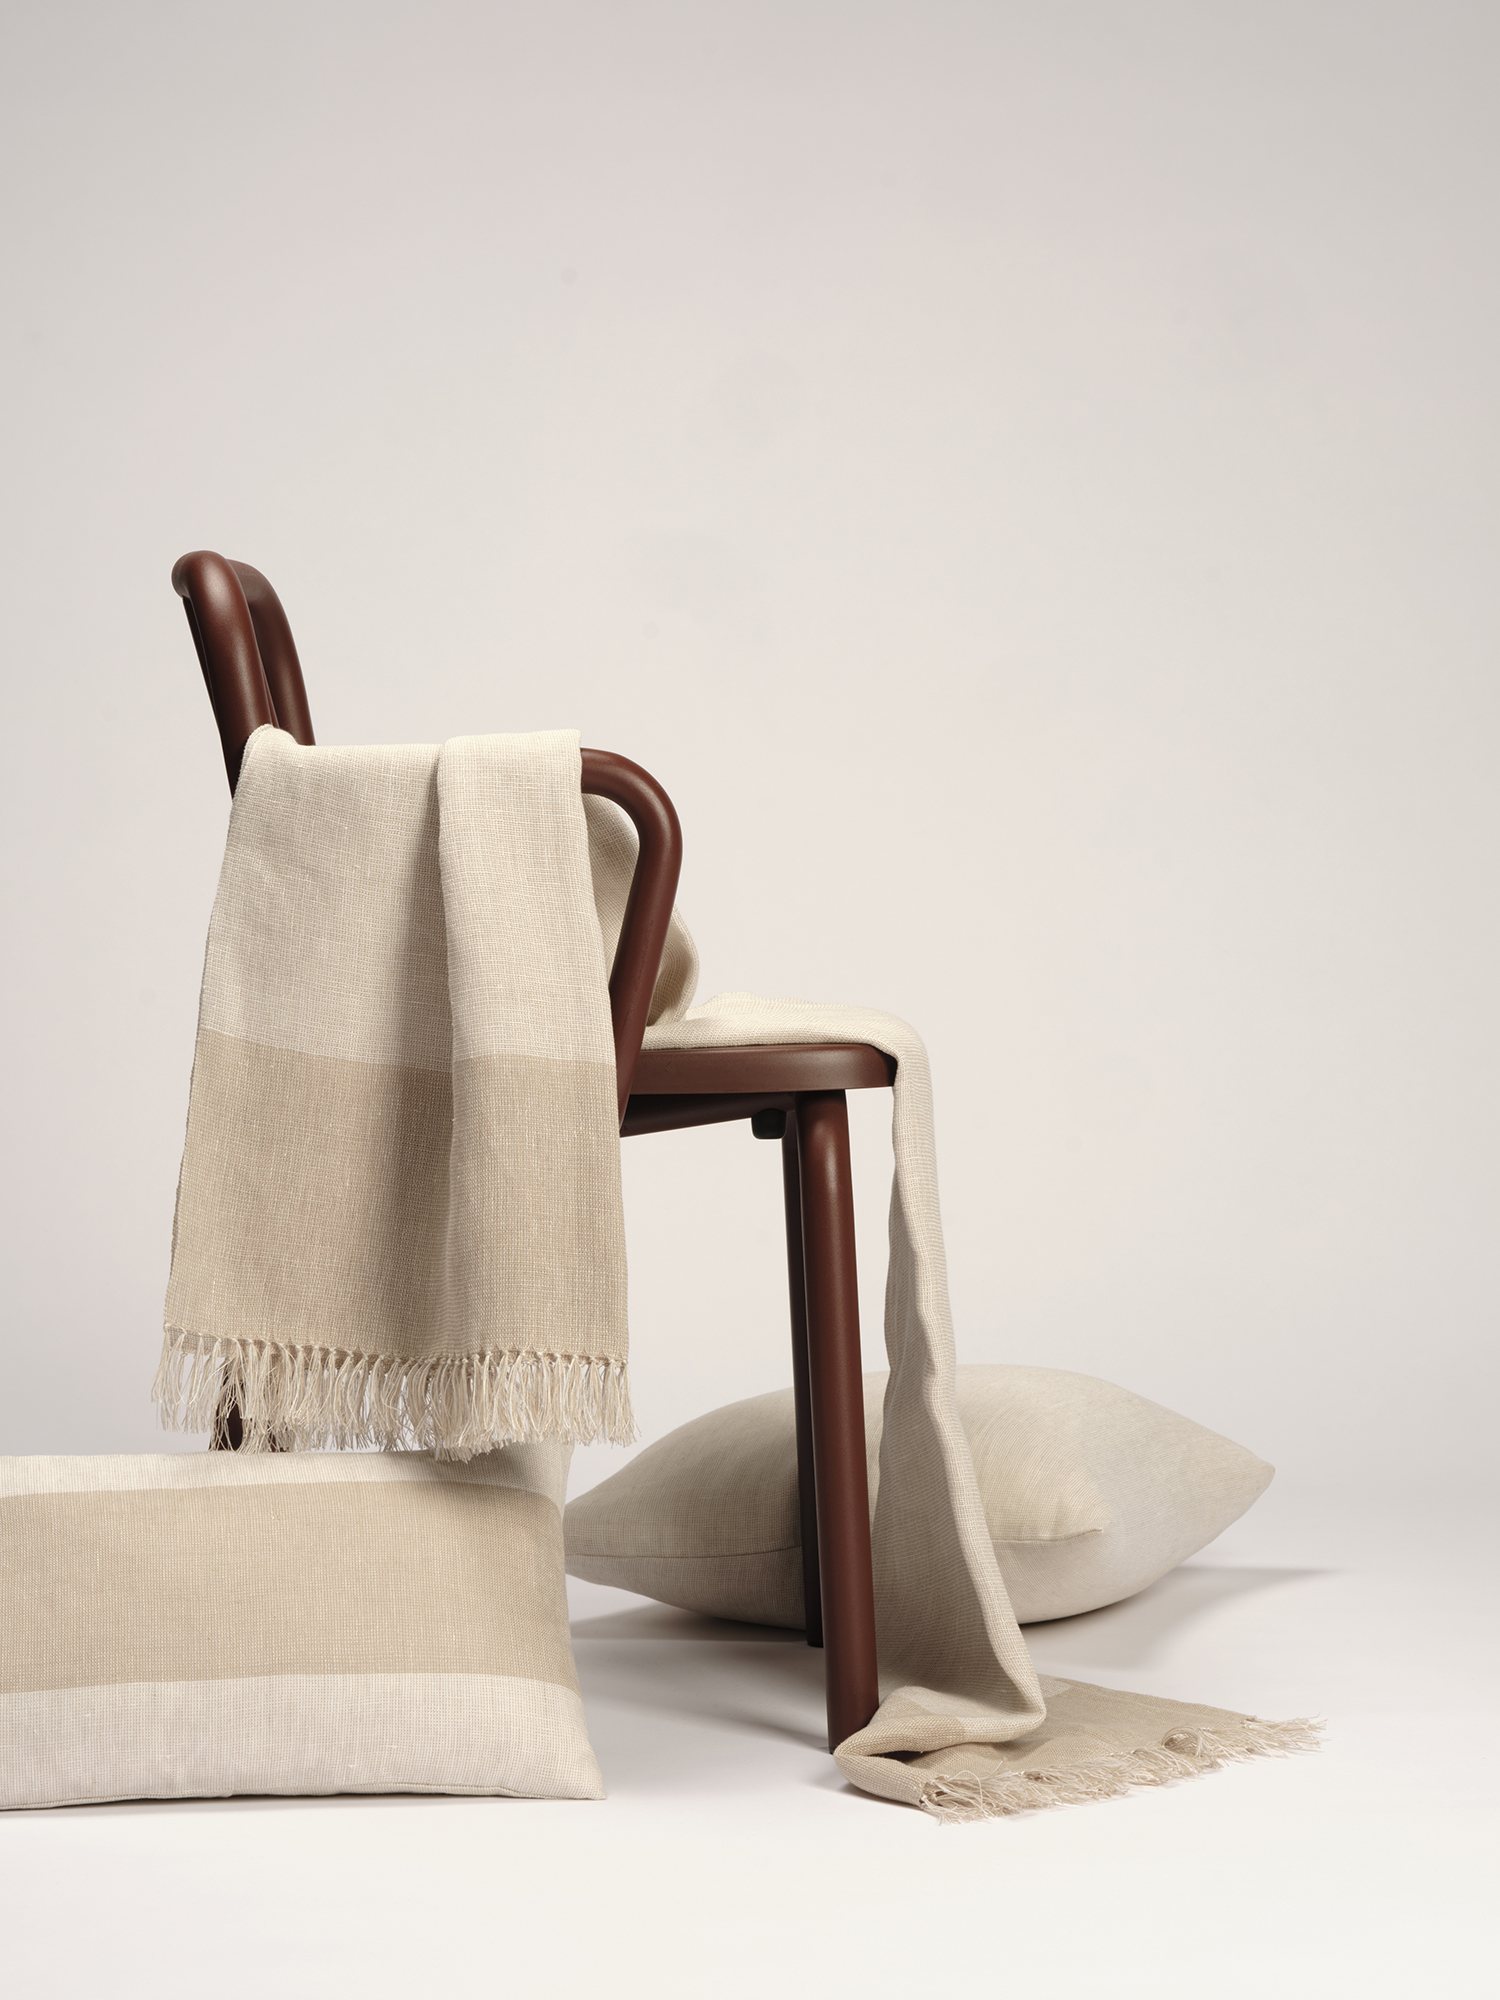 Manta y cojines de lino europeo en tonos grises sobre silla de Muebles de 114